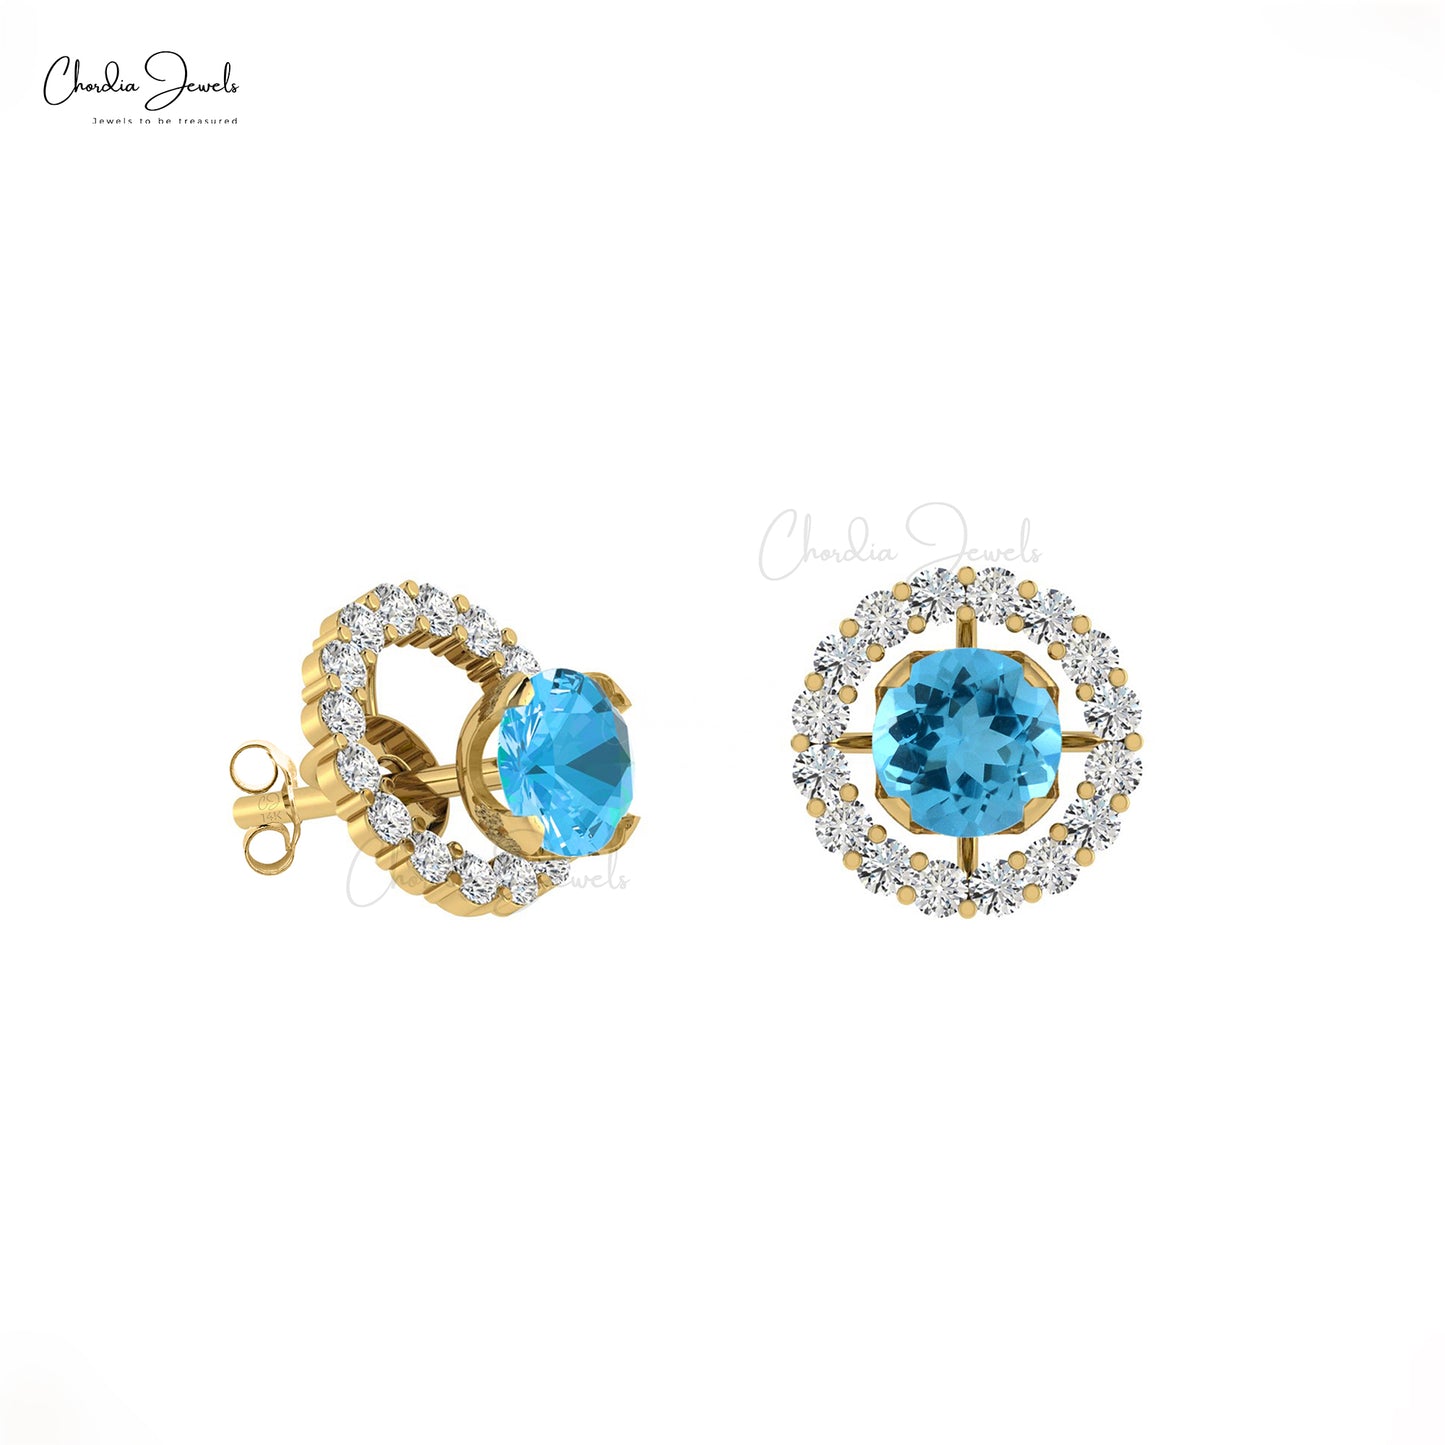 G-H Diamond & Natural Swiss Blue Topaz Detachable Halo Earrings in 14K Gold for Her